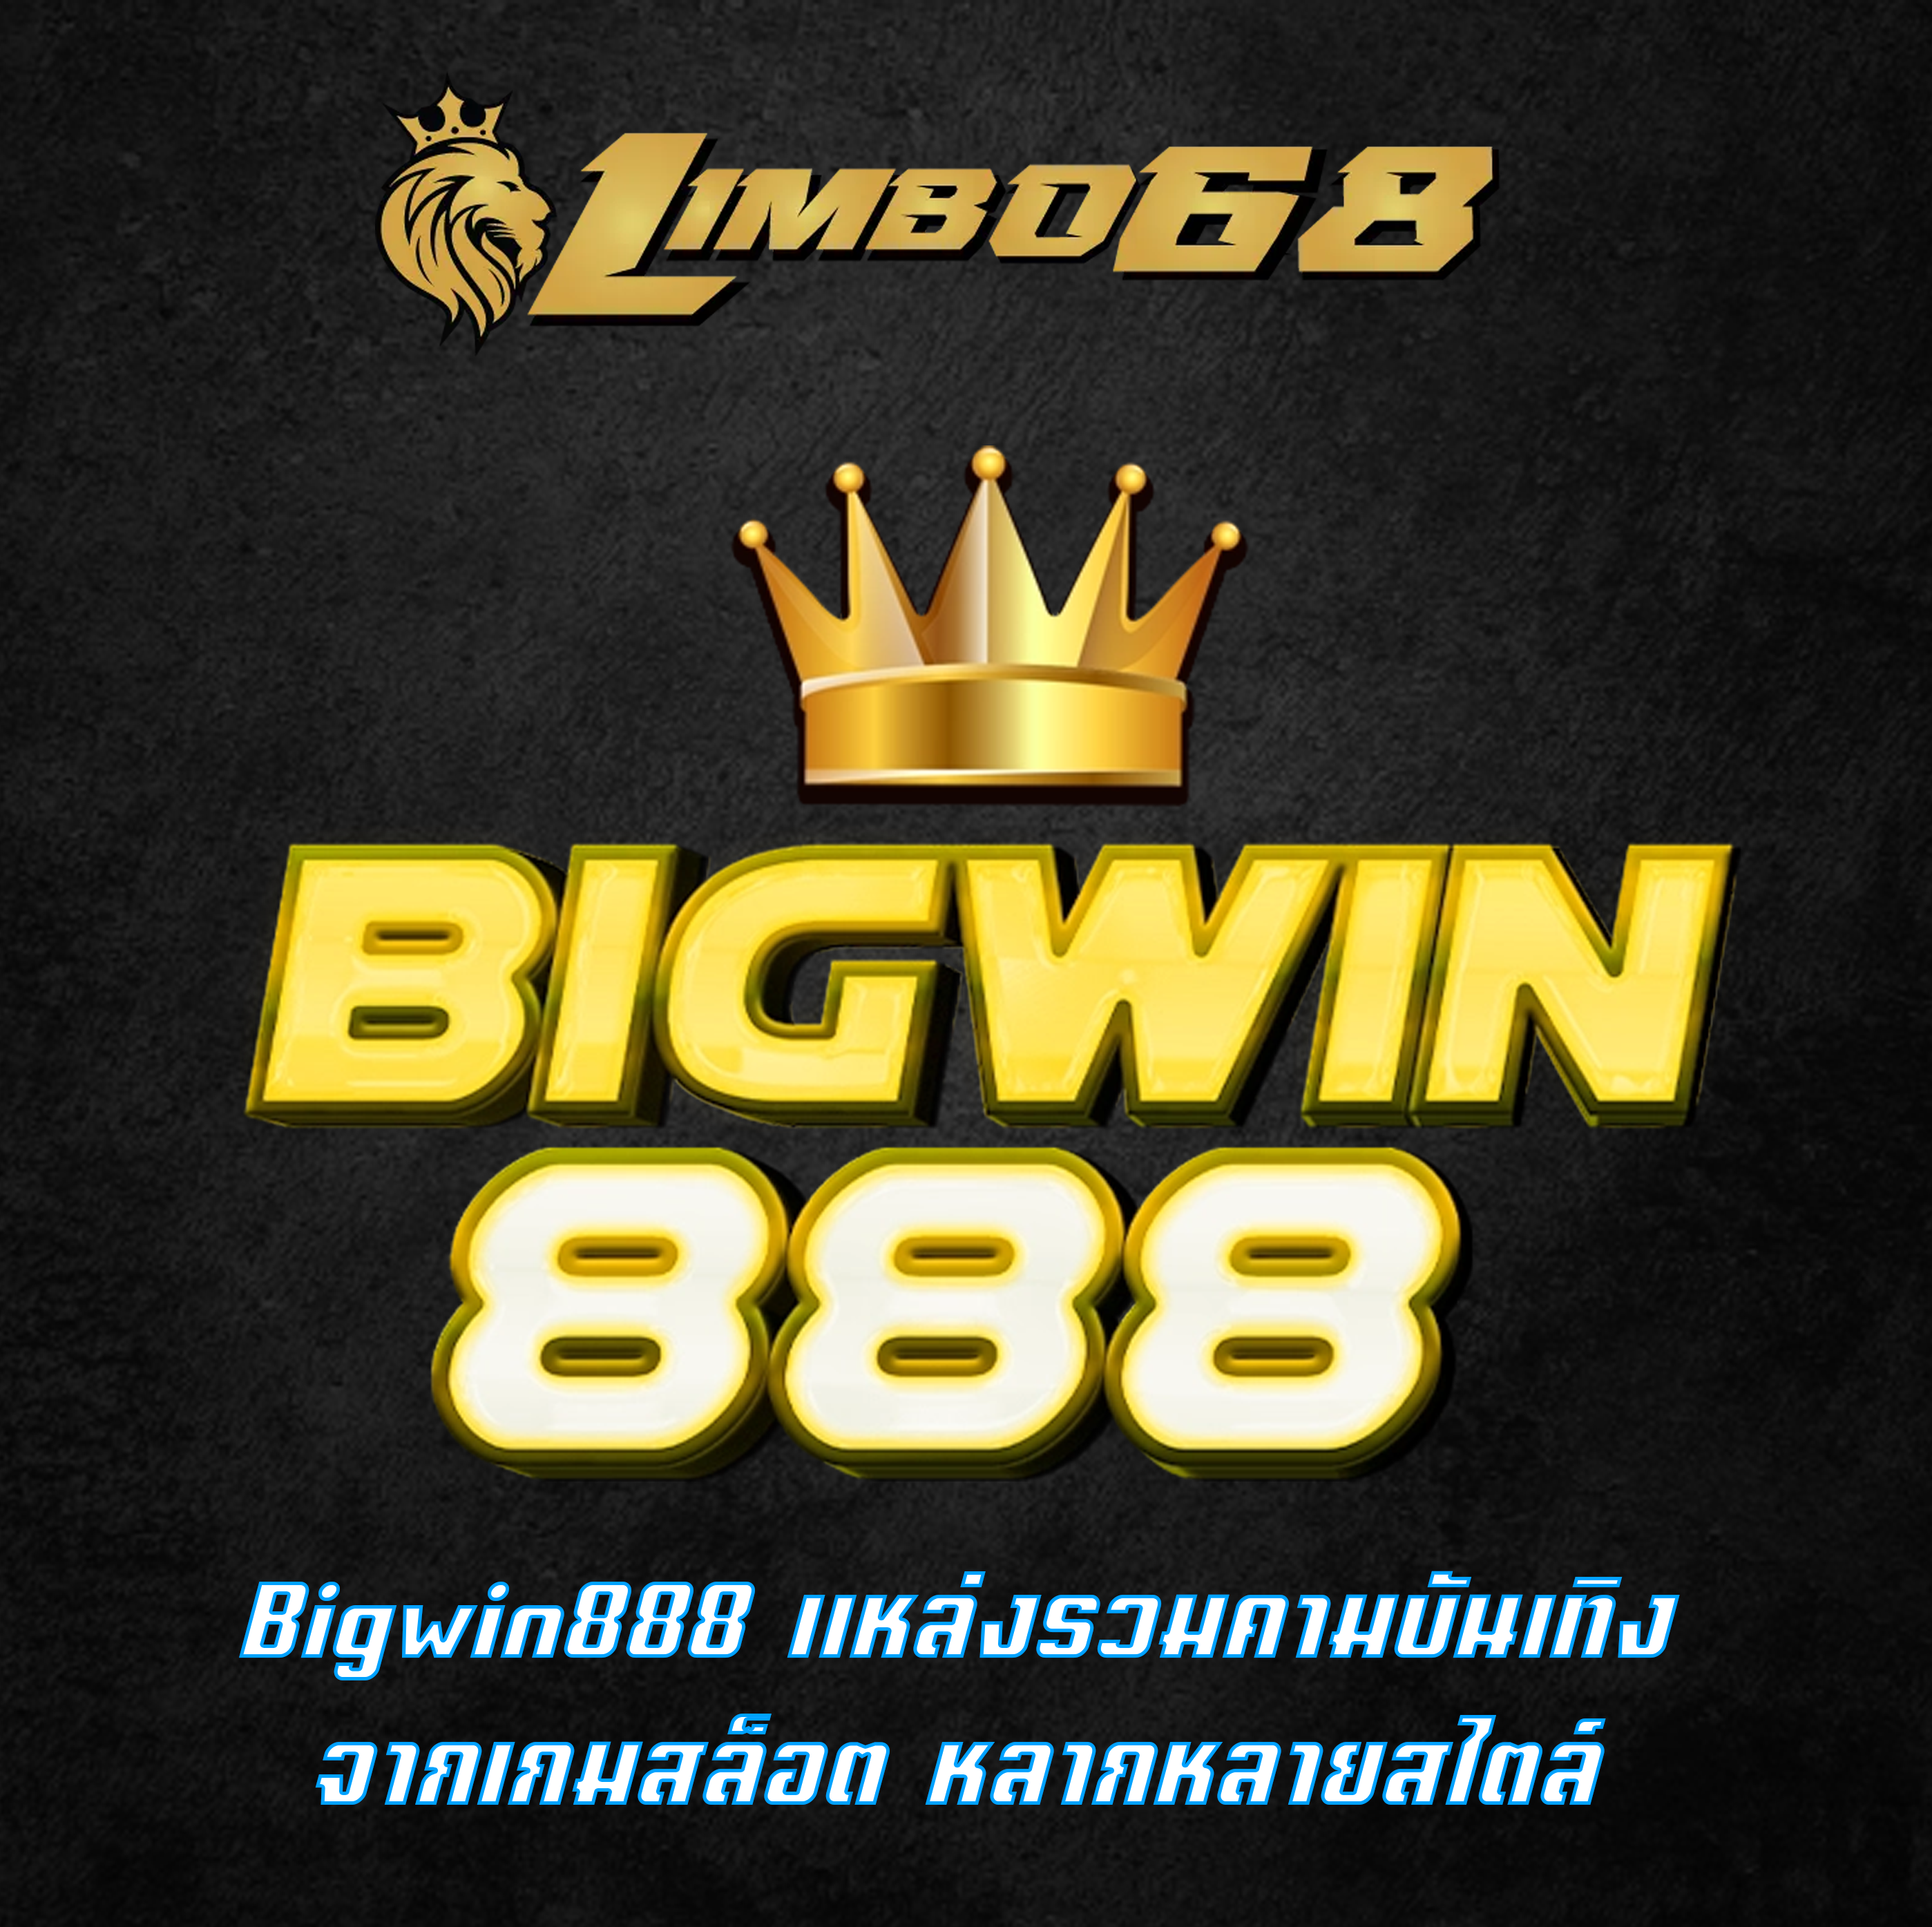 Bigwin888 แหล่งรวมคามบันเทิงจากเกมสล็อต หลากหลายสไตล์